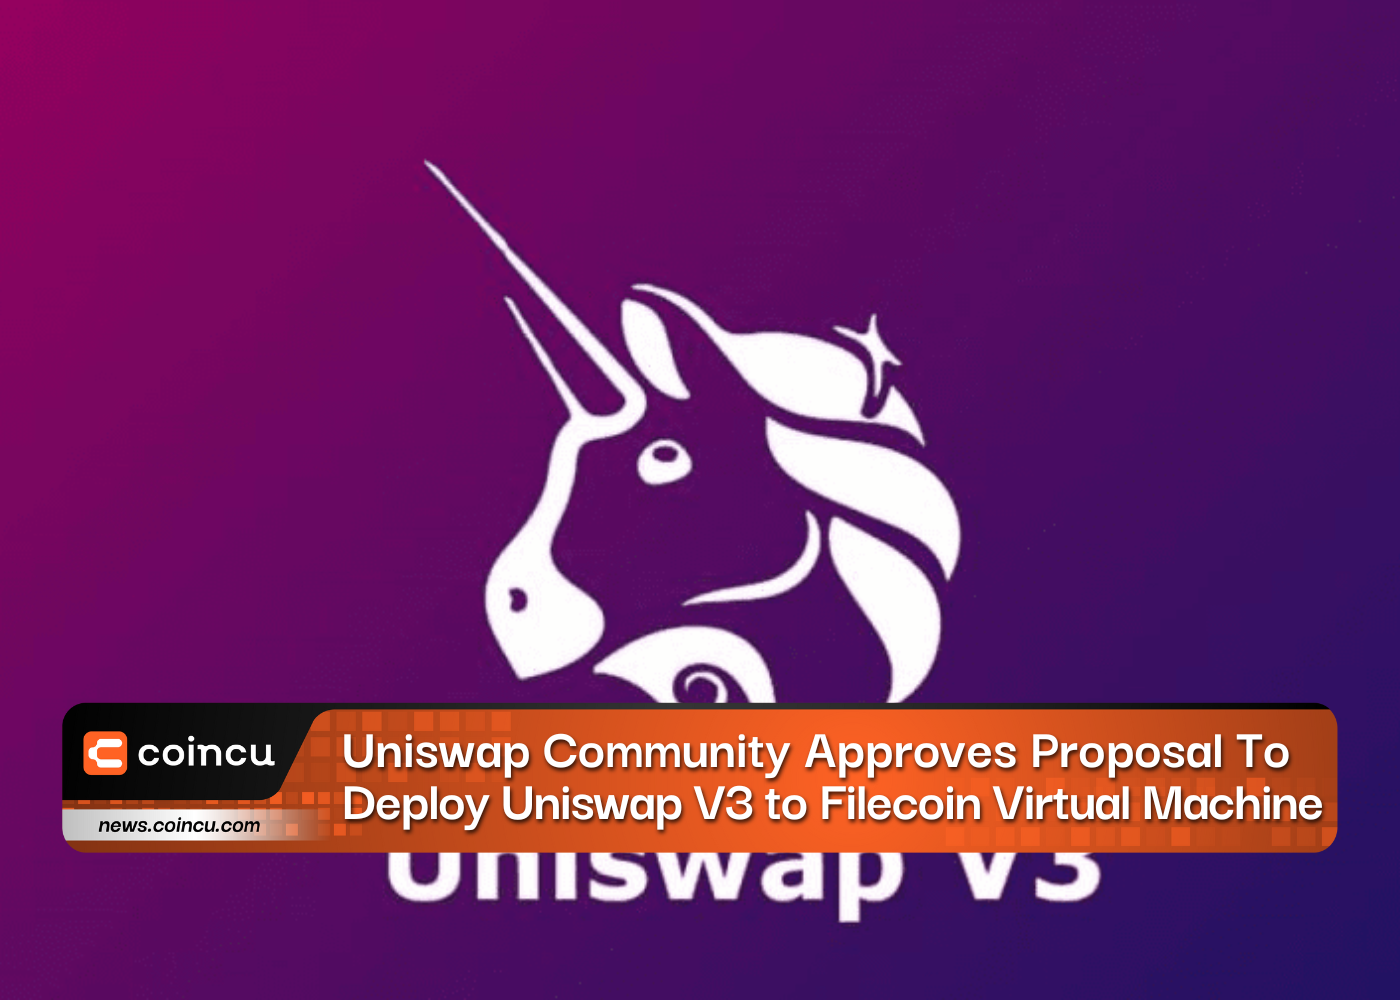 La communauté Uniswap approuve la proposition de